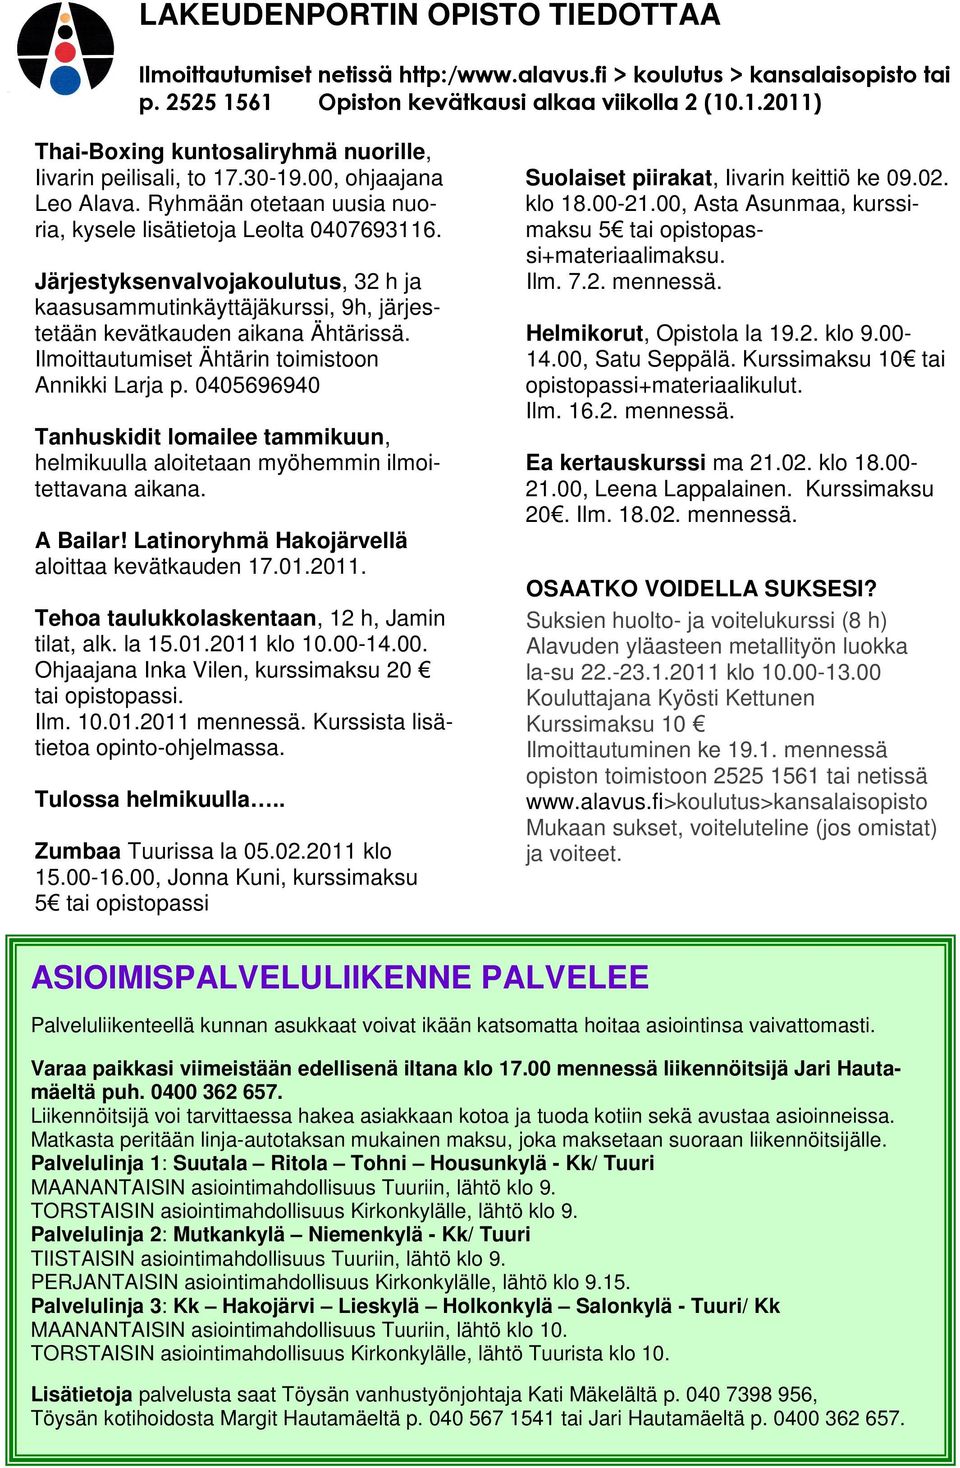 Järjestyksenvalvojakoulutus, 32 h ja kaasusammutinkäyttäjäkurssi, 9h, järjestetään kevätkauden aikana Ähtärissä. Ilmoittautumiset Ähtärin toimistoon Annikki Larja p.